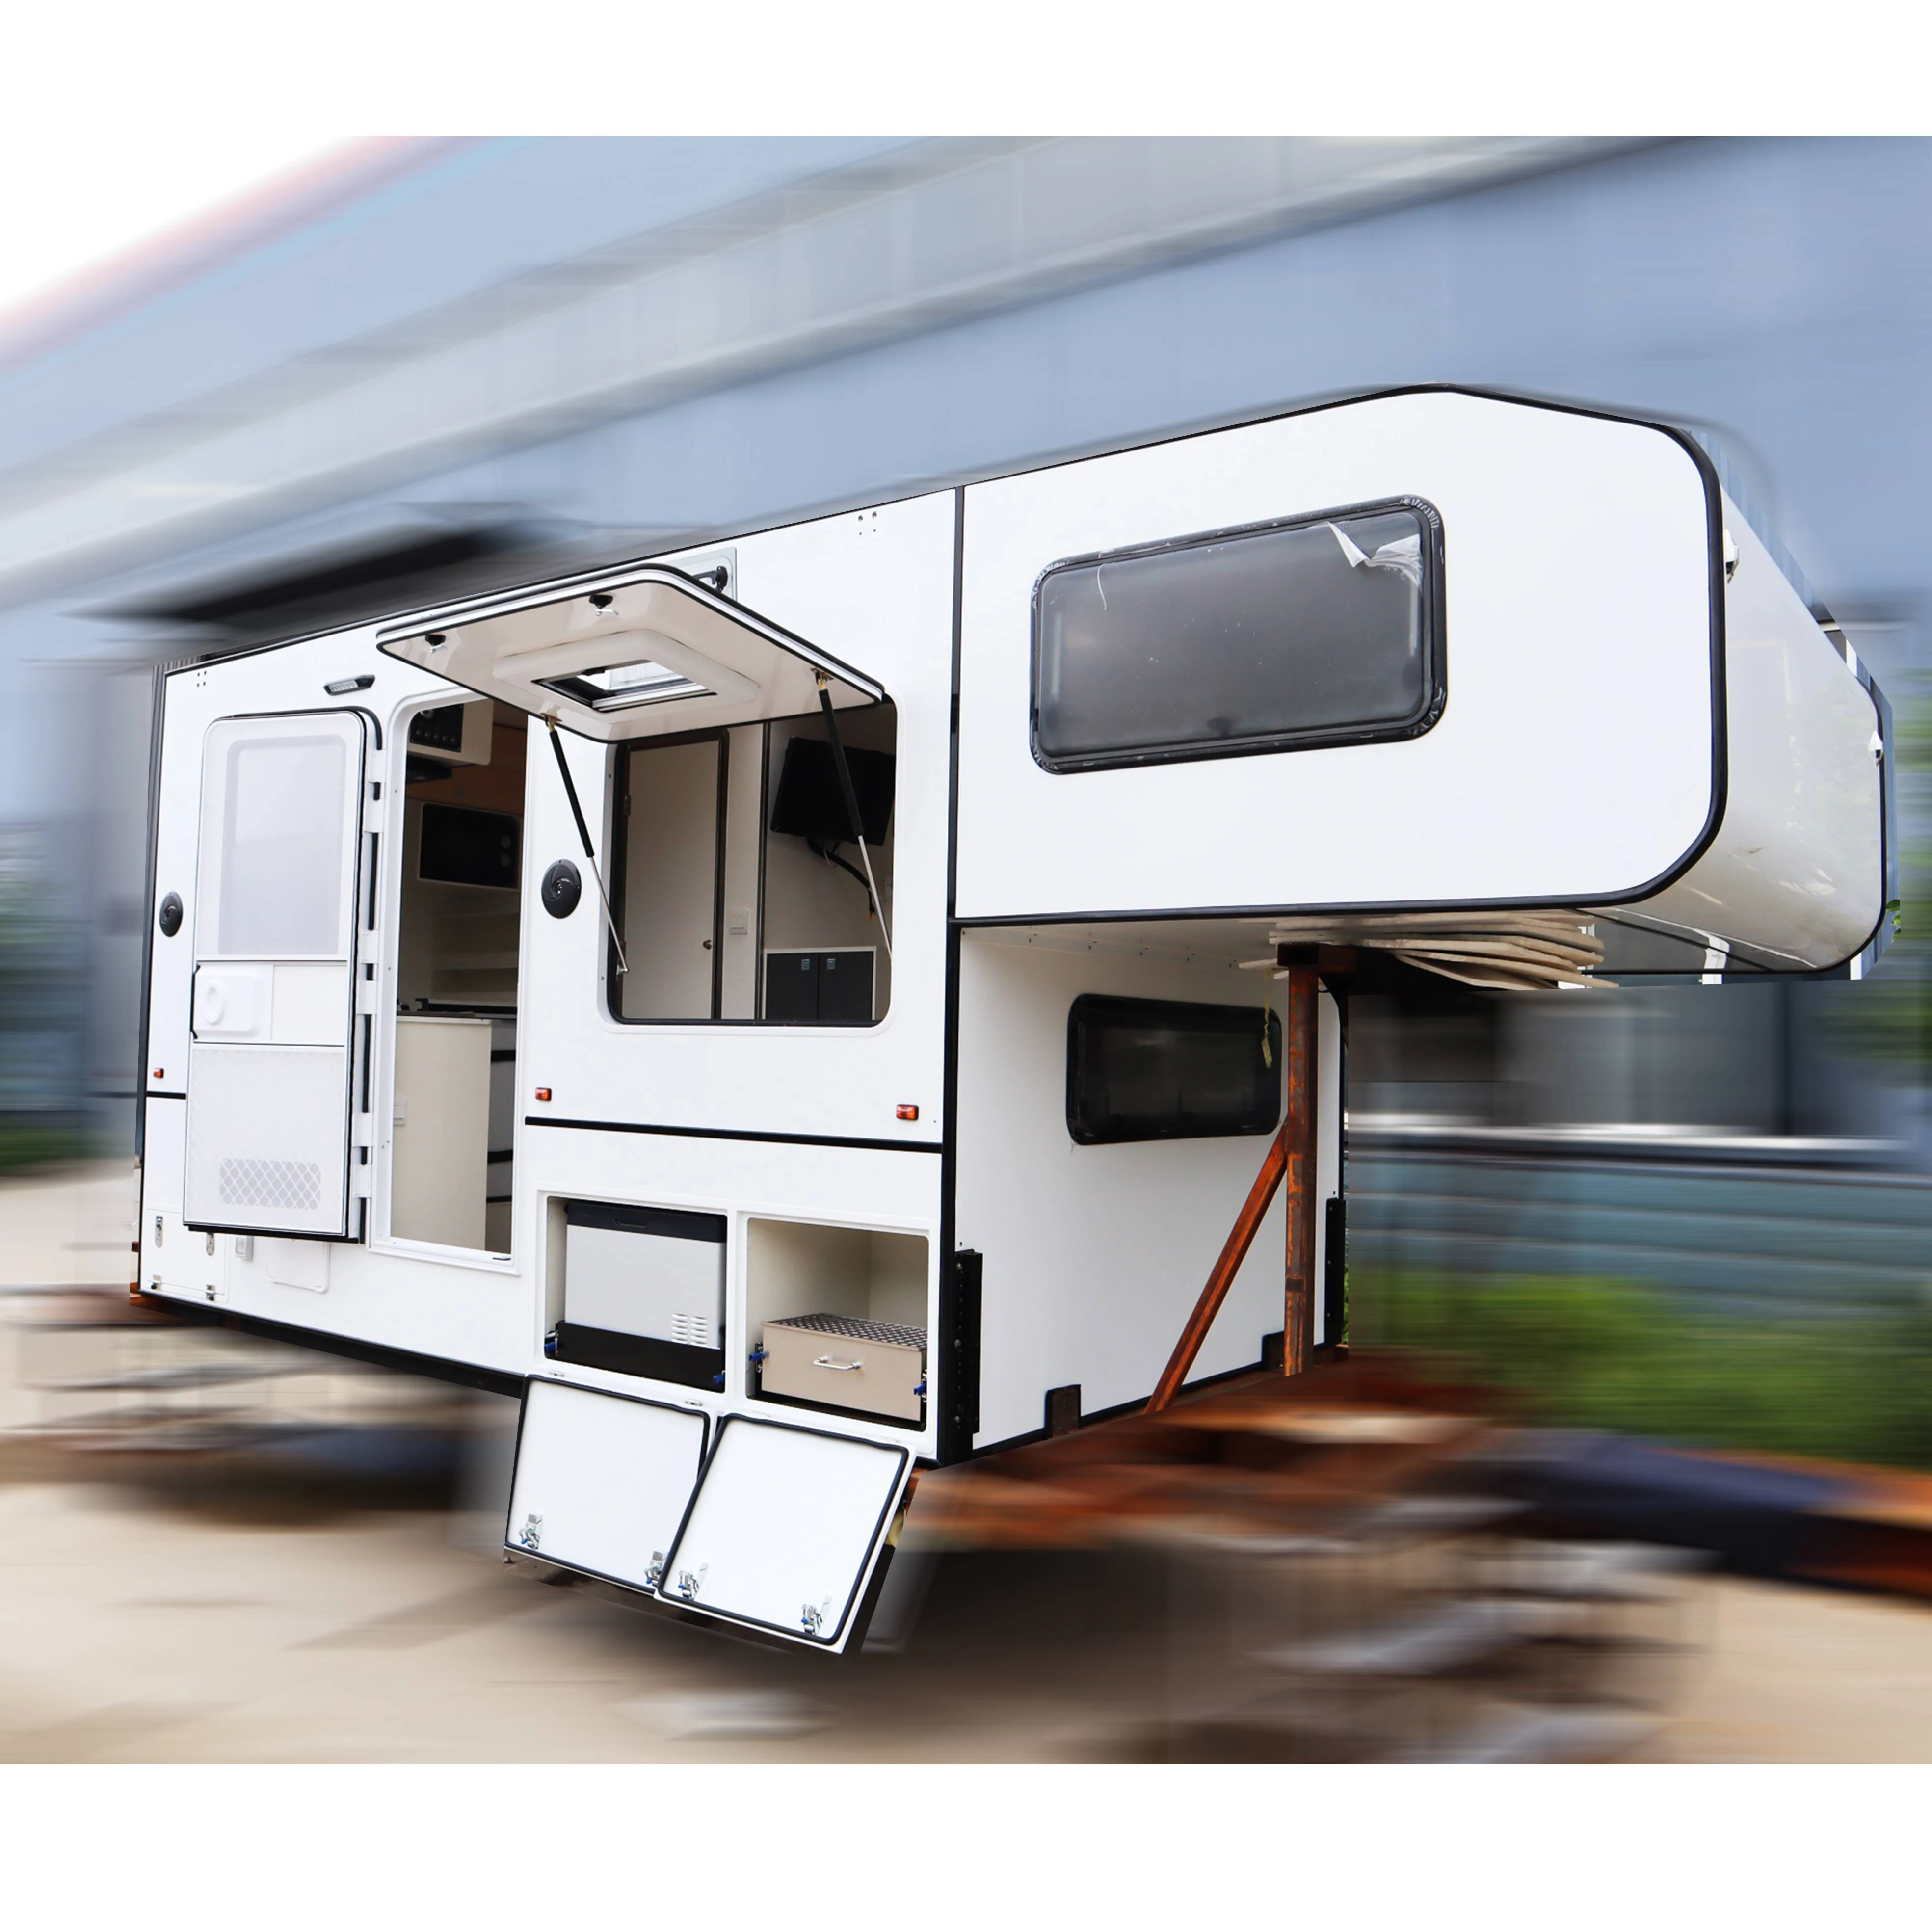 Easy fold truck camper slide in pick up camper caravan with inside shower room